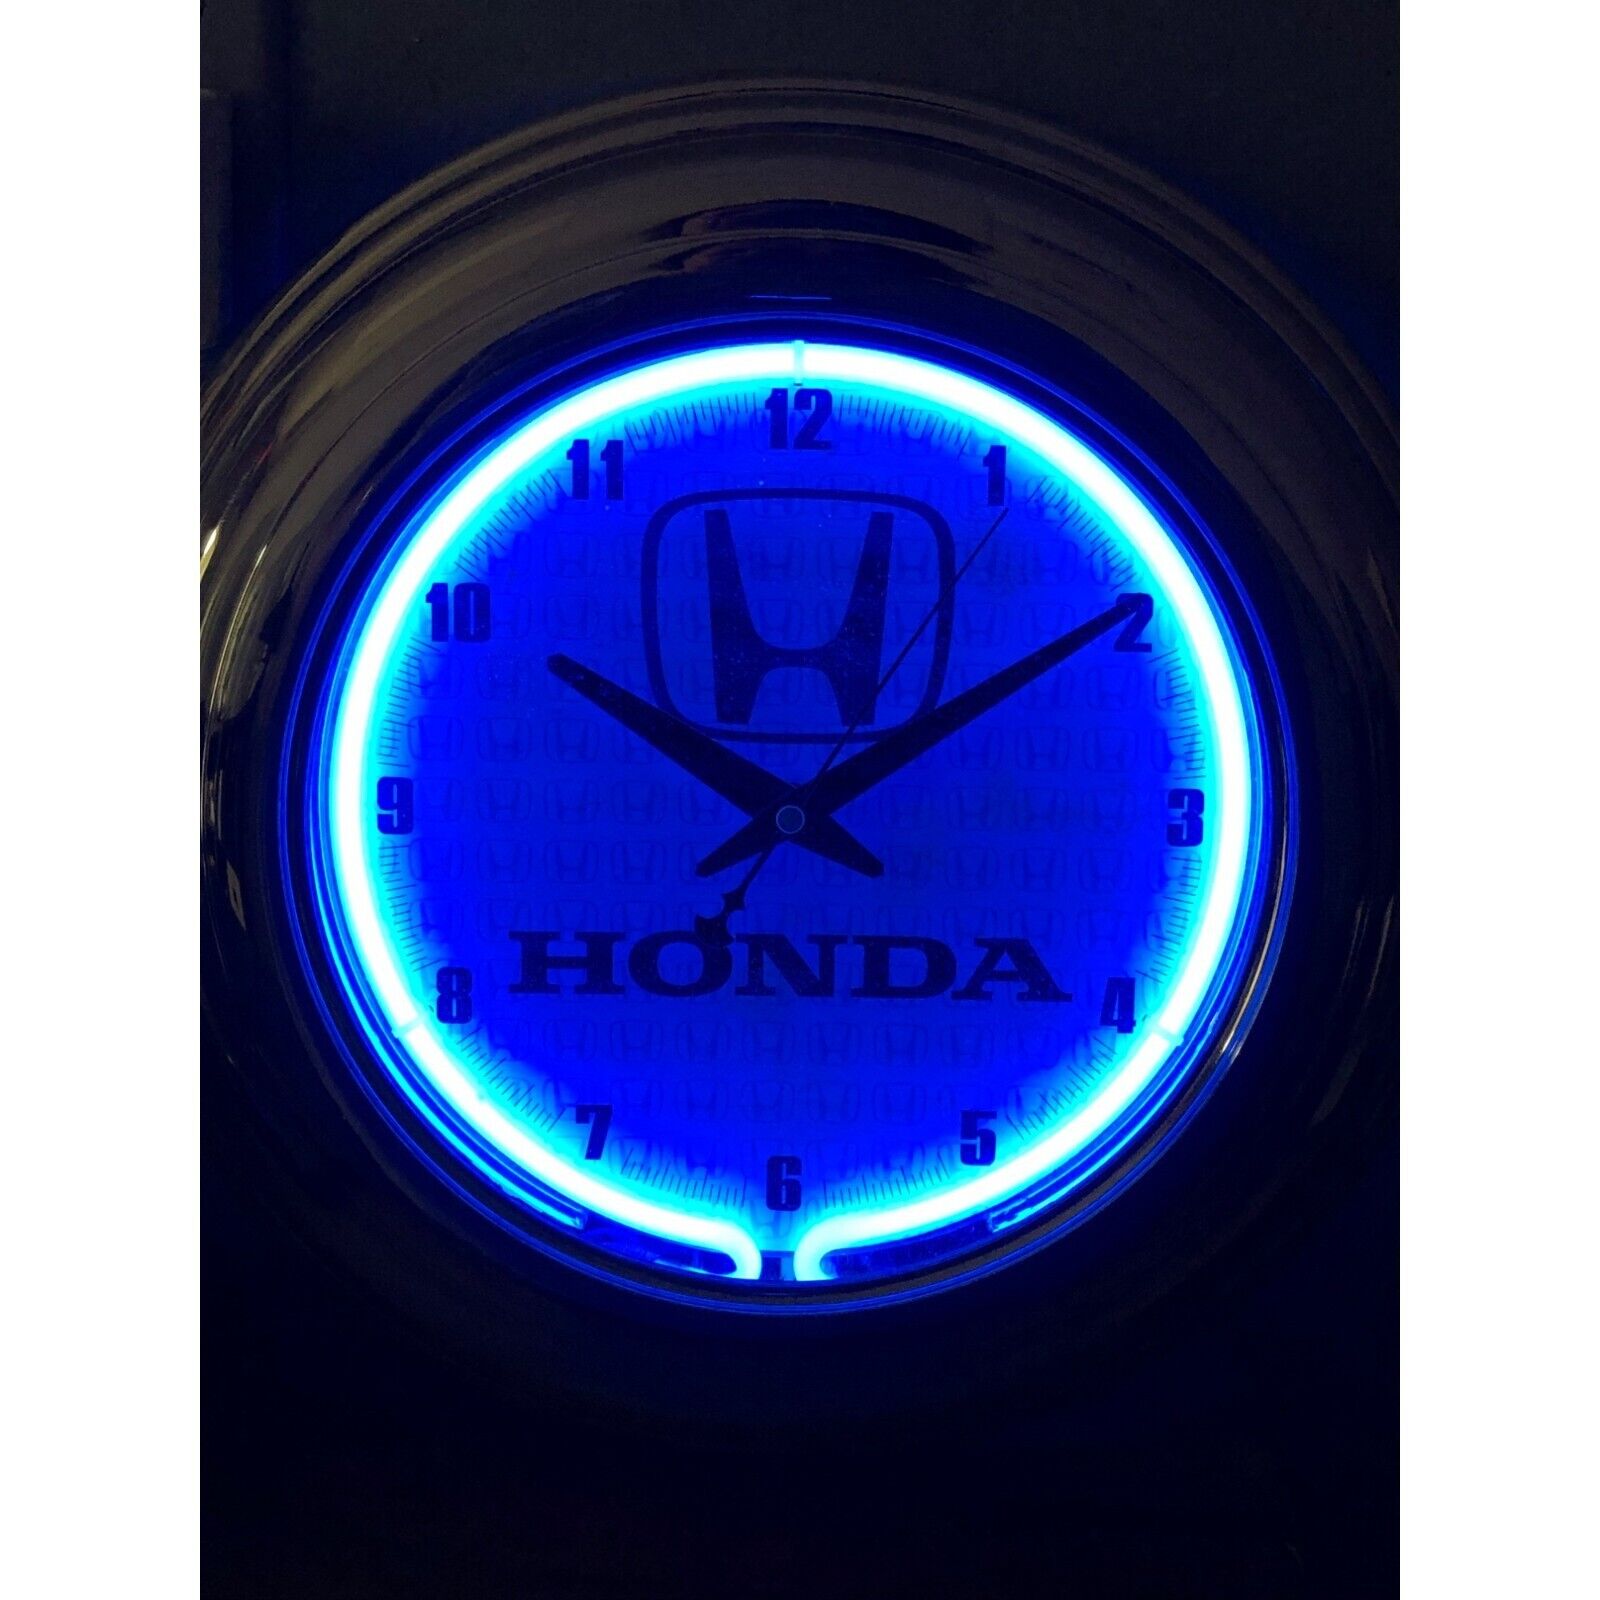 Honda Neon Wall Clock